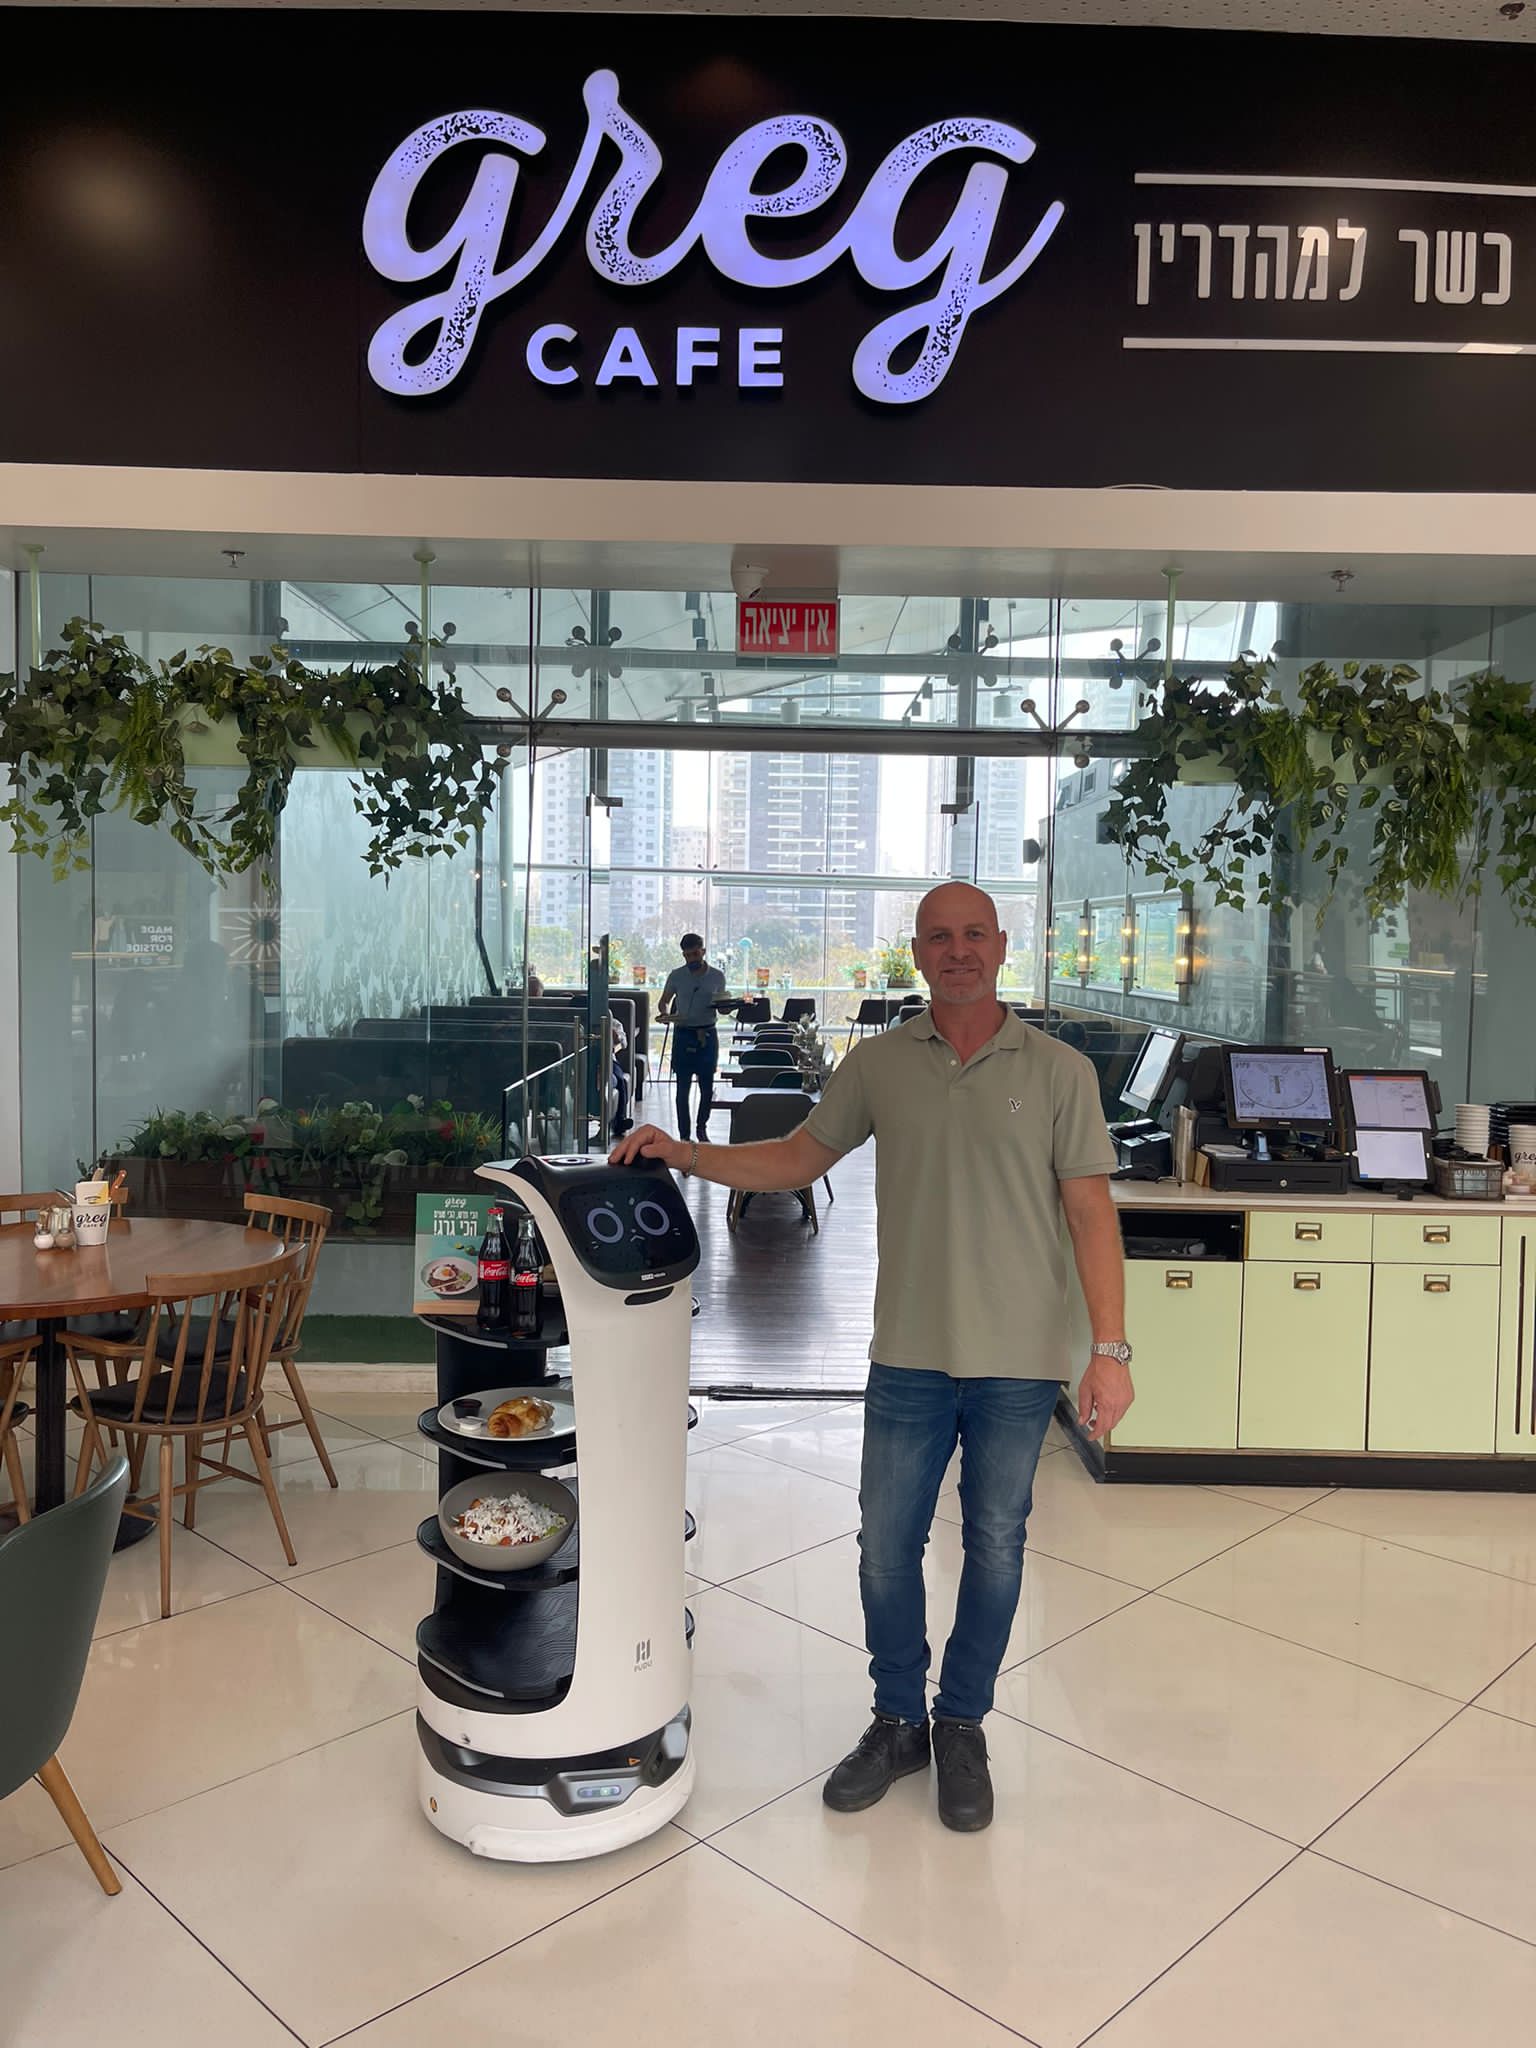 רשתות הקפה גרג וביגה החלו לשלב רובוטים בסניפי הרשת שיישמשו כמלצרים, מארחת ואף יערכו שליחויות מזון בקניון